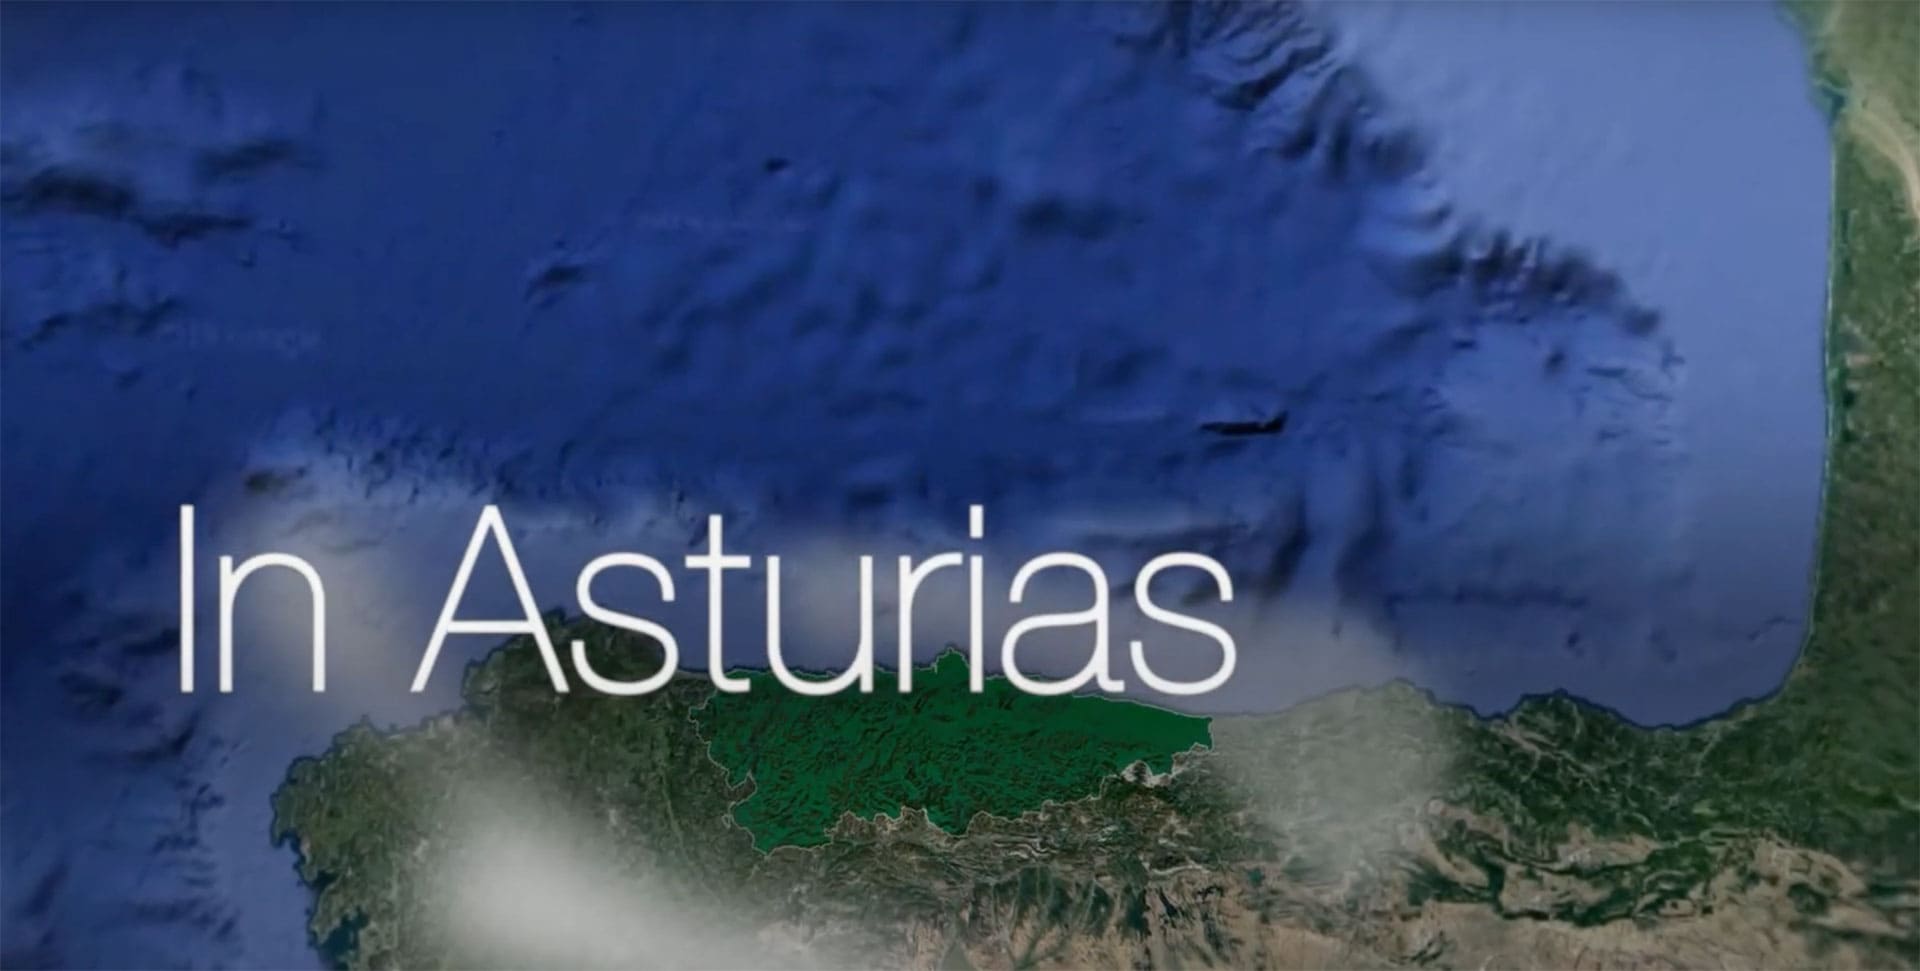 Invest in Asturias